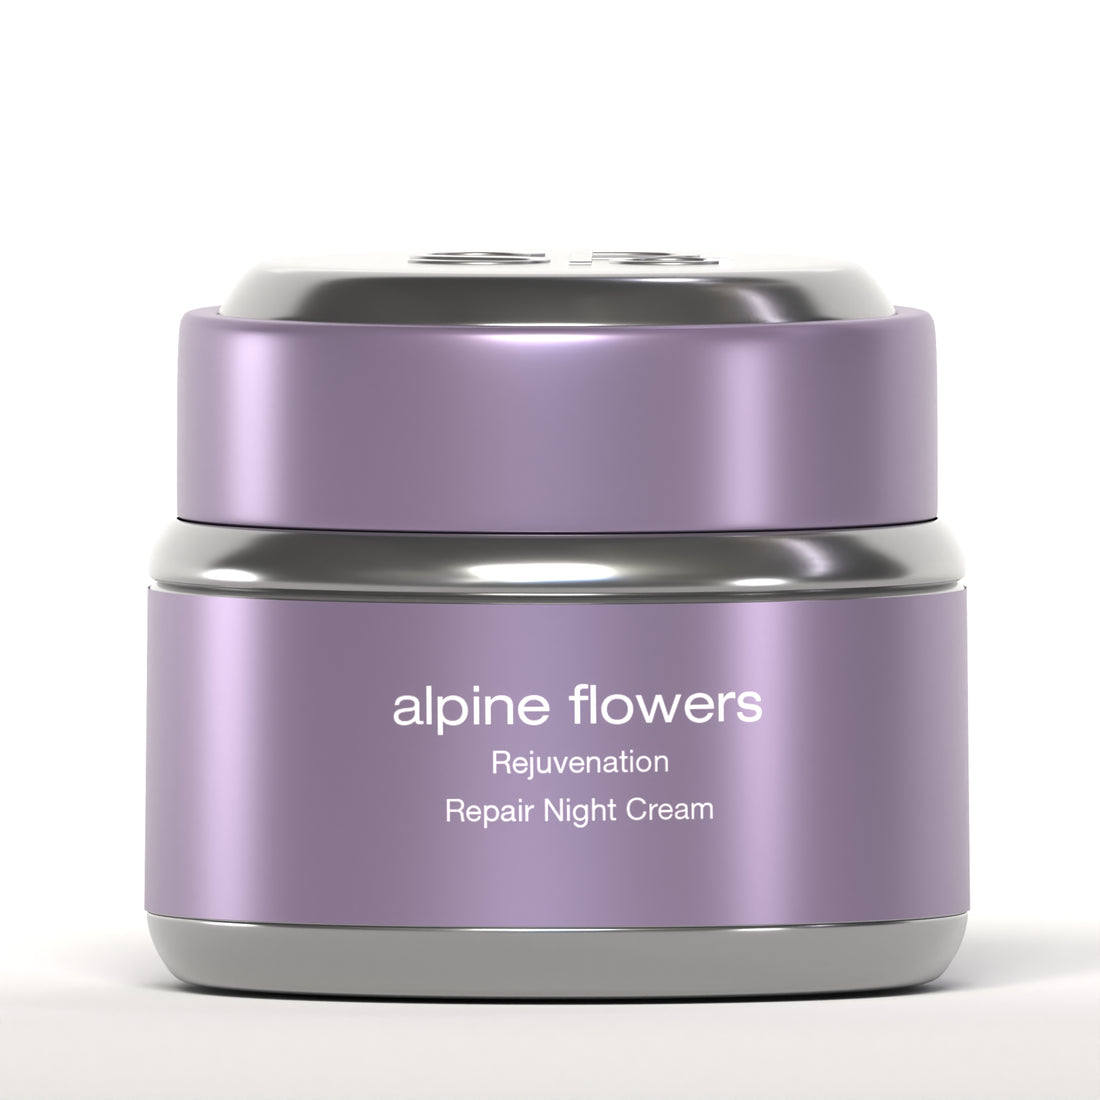 alpine flowers Repair Night Cream